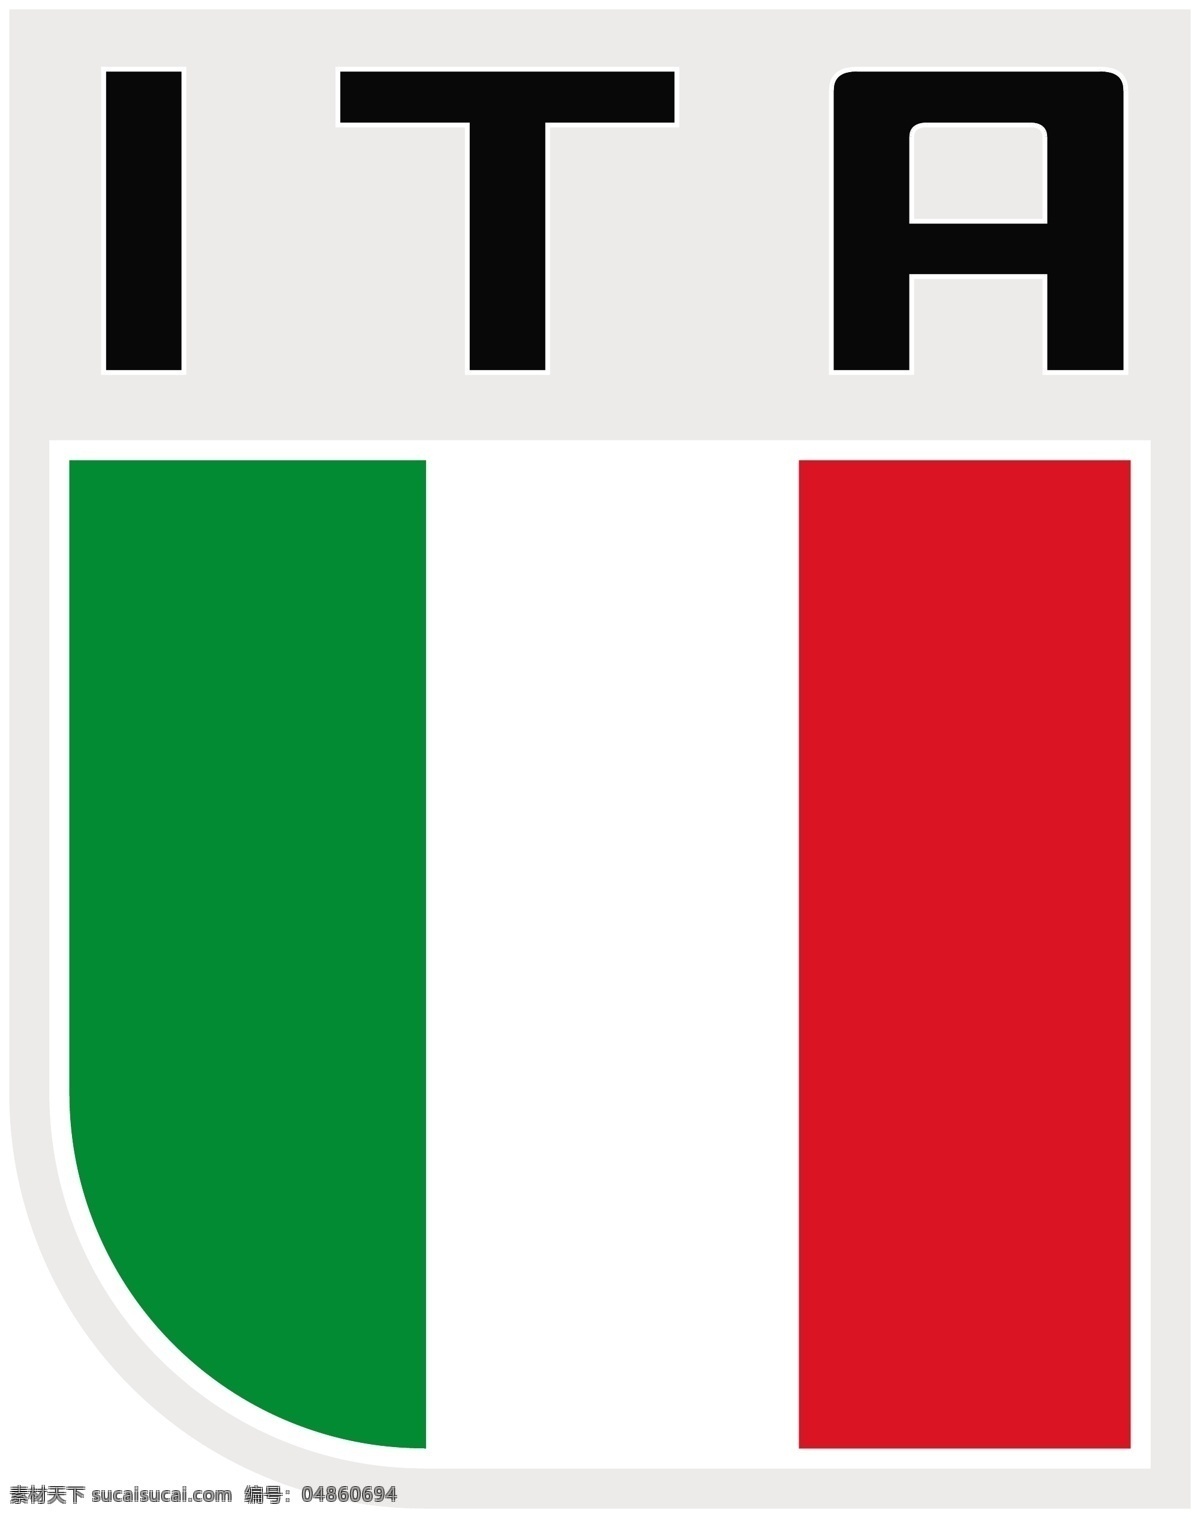 意大利 国旗 图标 矢量图 日常生活